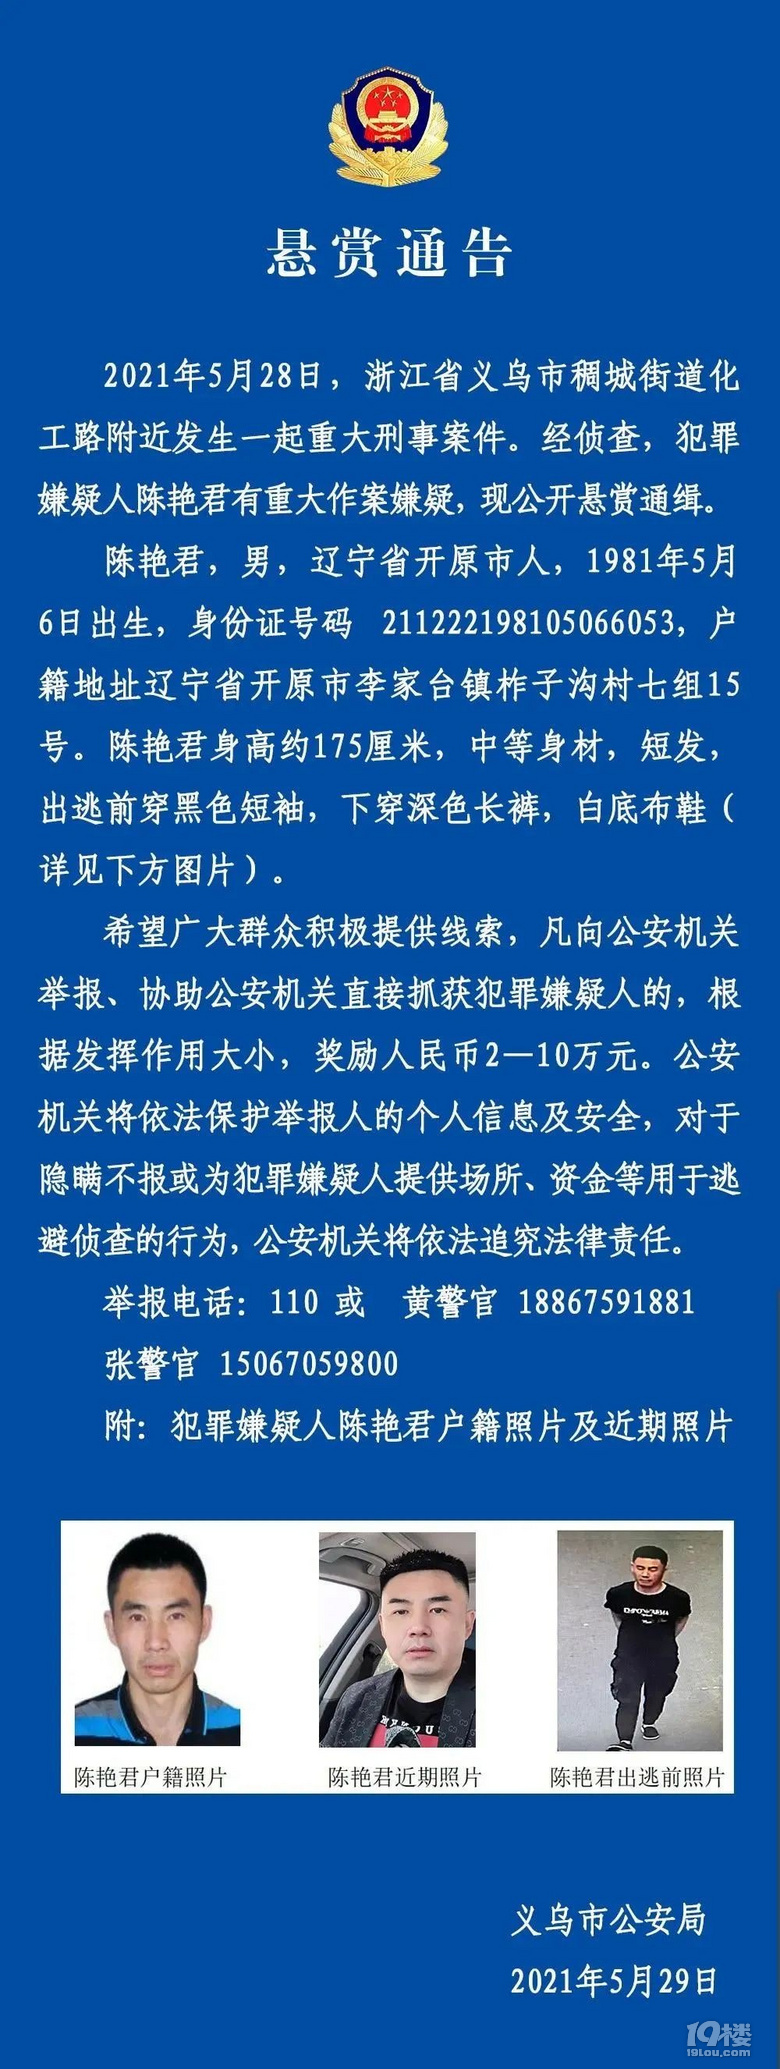 义乌市公安局发布一则悬赏通告